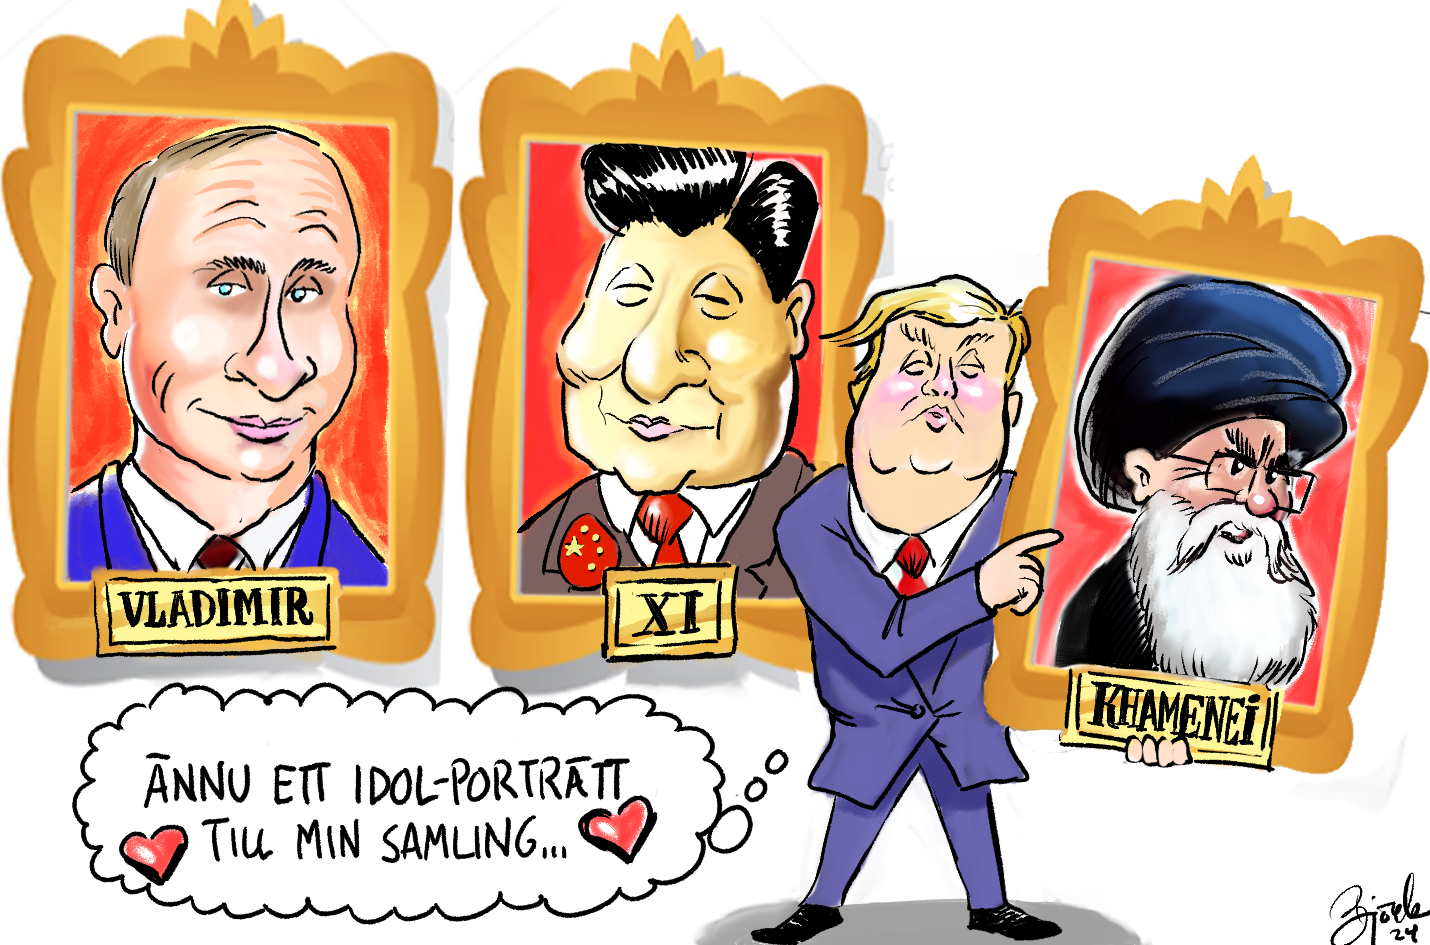 Veckans Björk. Teckningen visar Donald Trump som hänger upp ett idolporträtt av Irans ledare, Ali Khamenei. Där hänger redan stora bilder på Vladimir Putin och Xi Jinping.